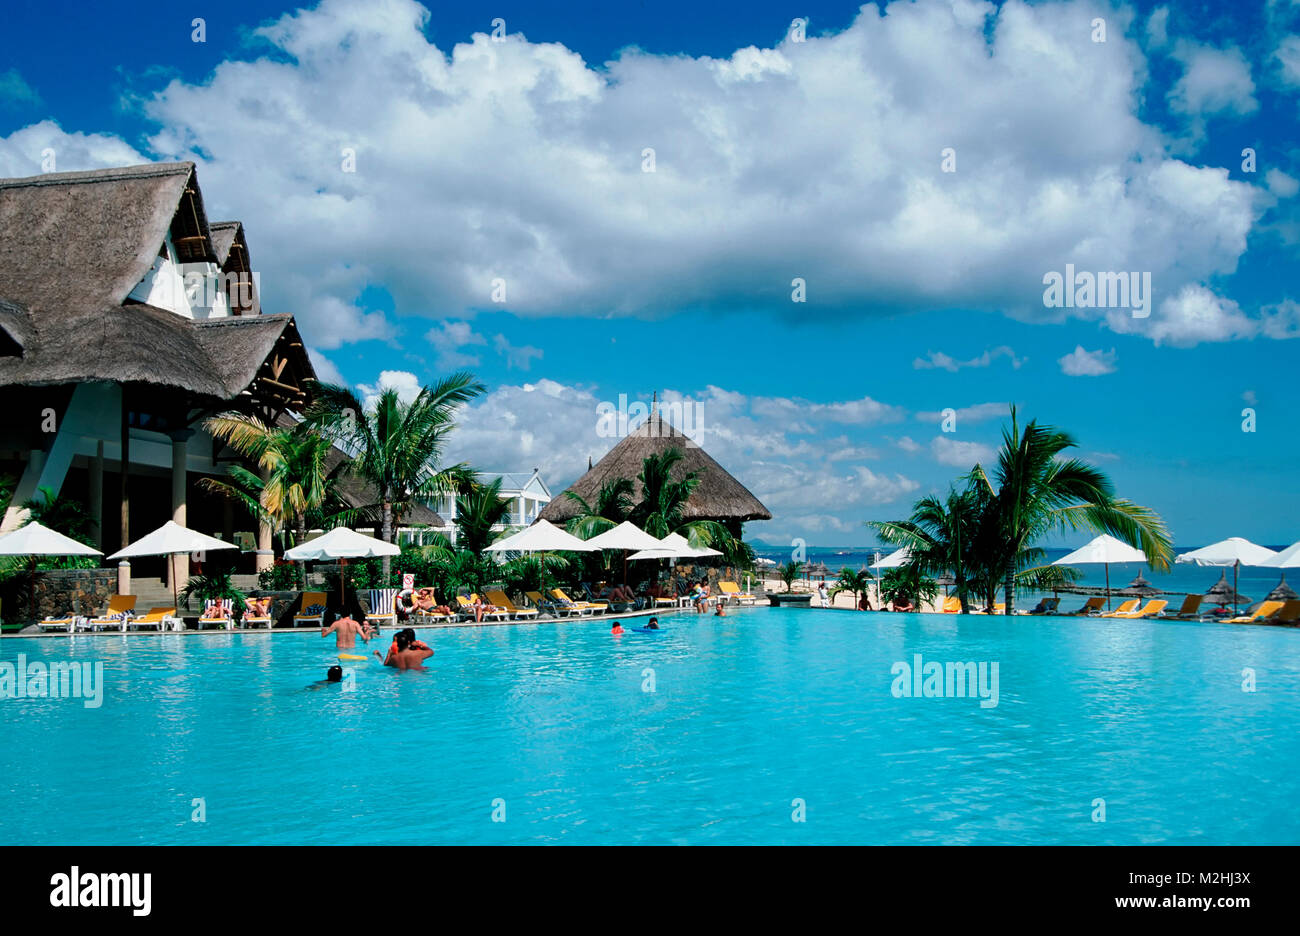 Pool of Hotel 'Victoria'  near Balaclava, Mauritius Stock Photo